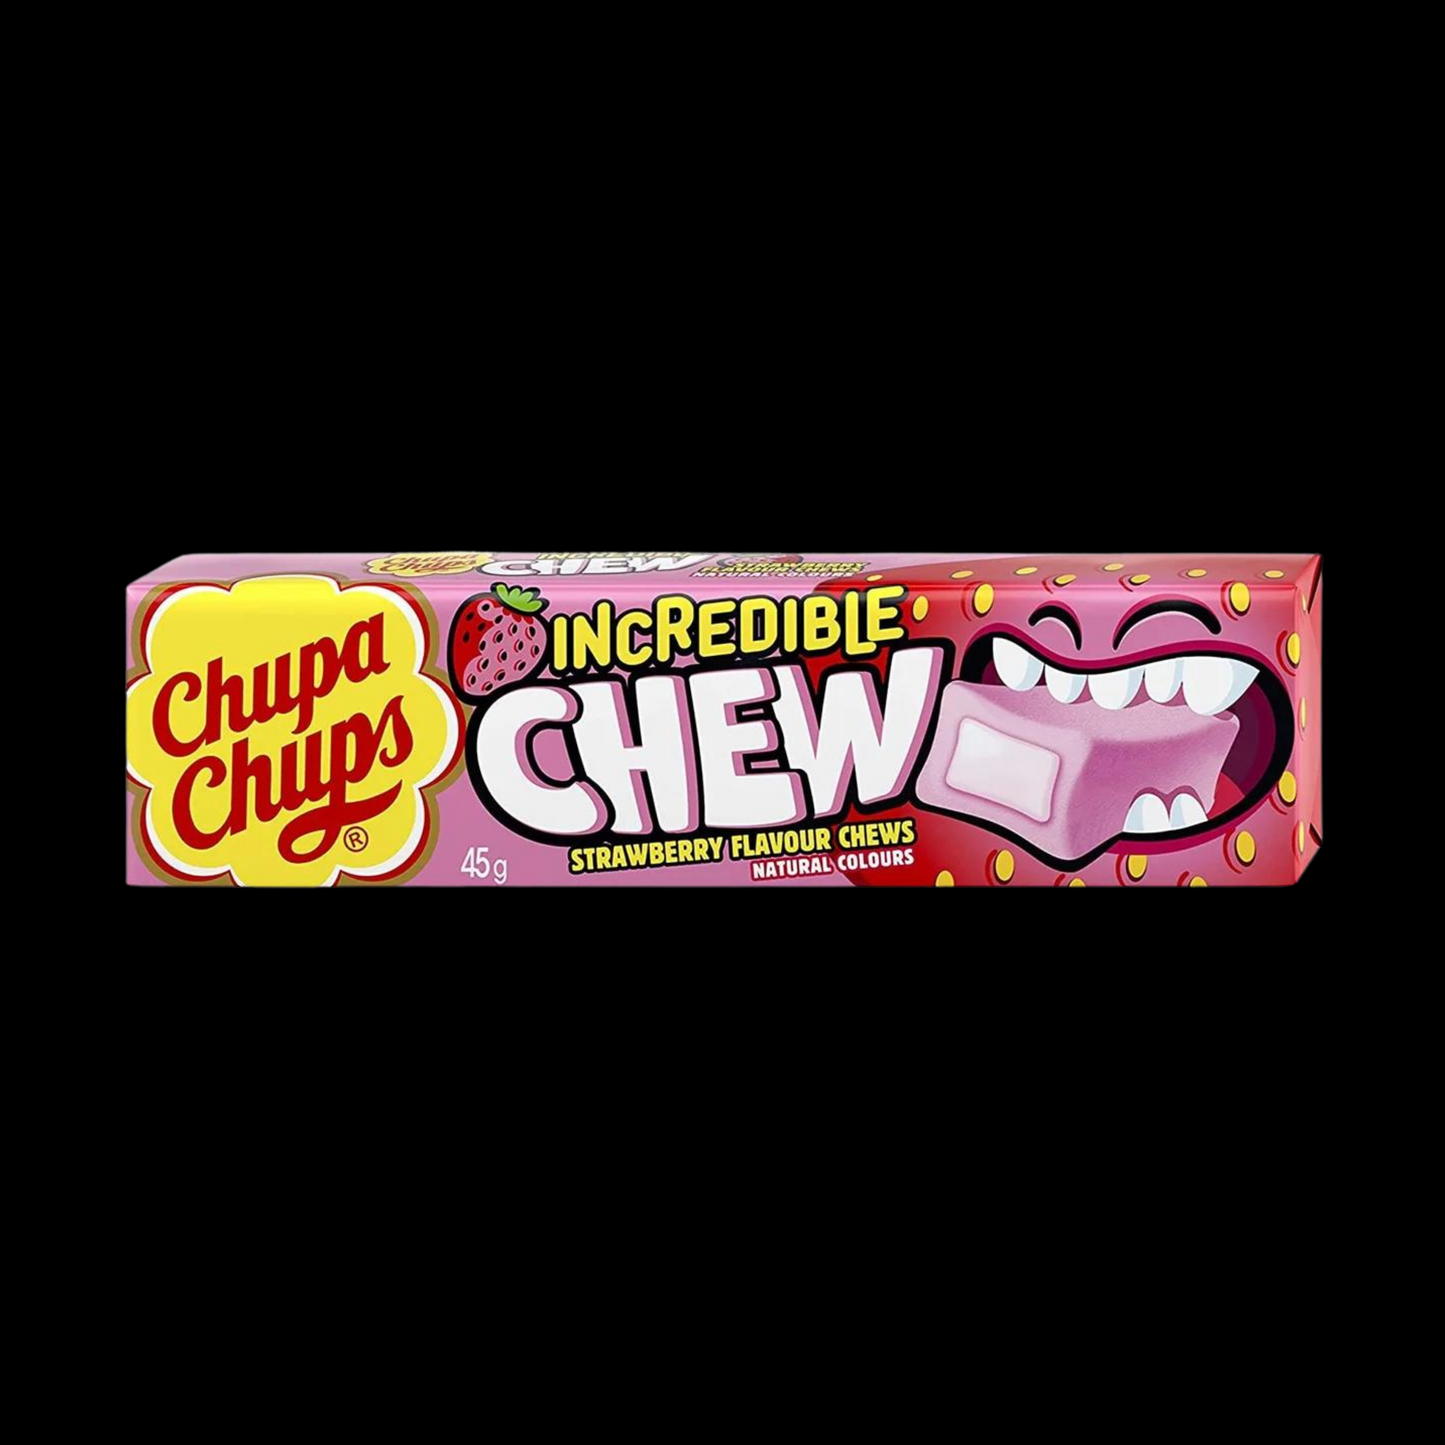 Chupa Chups Incredible Chew